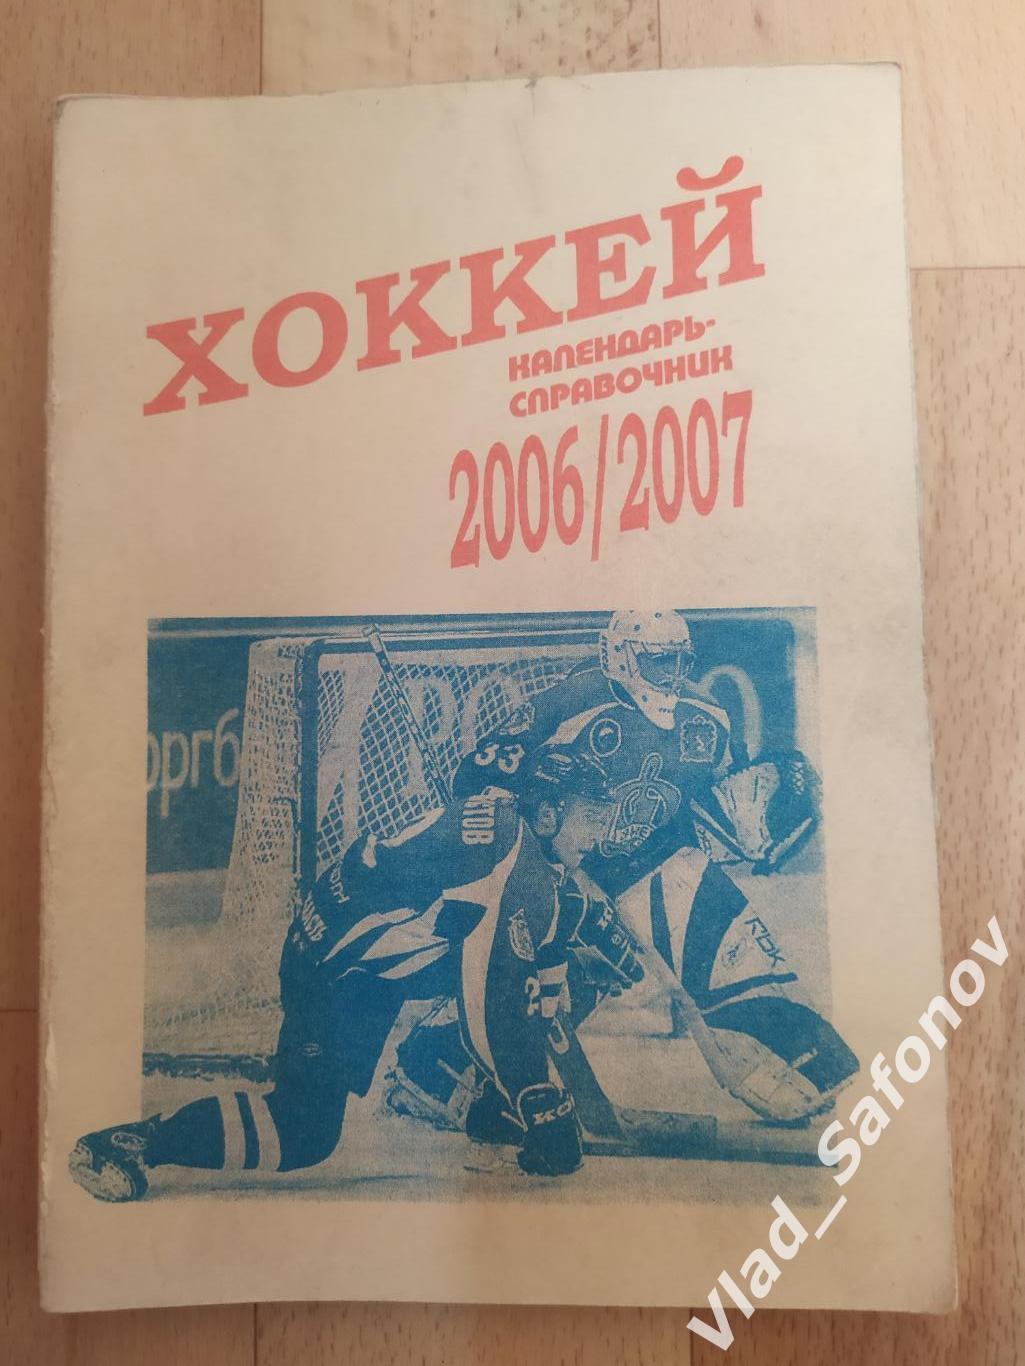 Календарь справочник. Хоккей. Москва 2006.